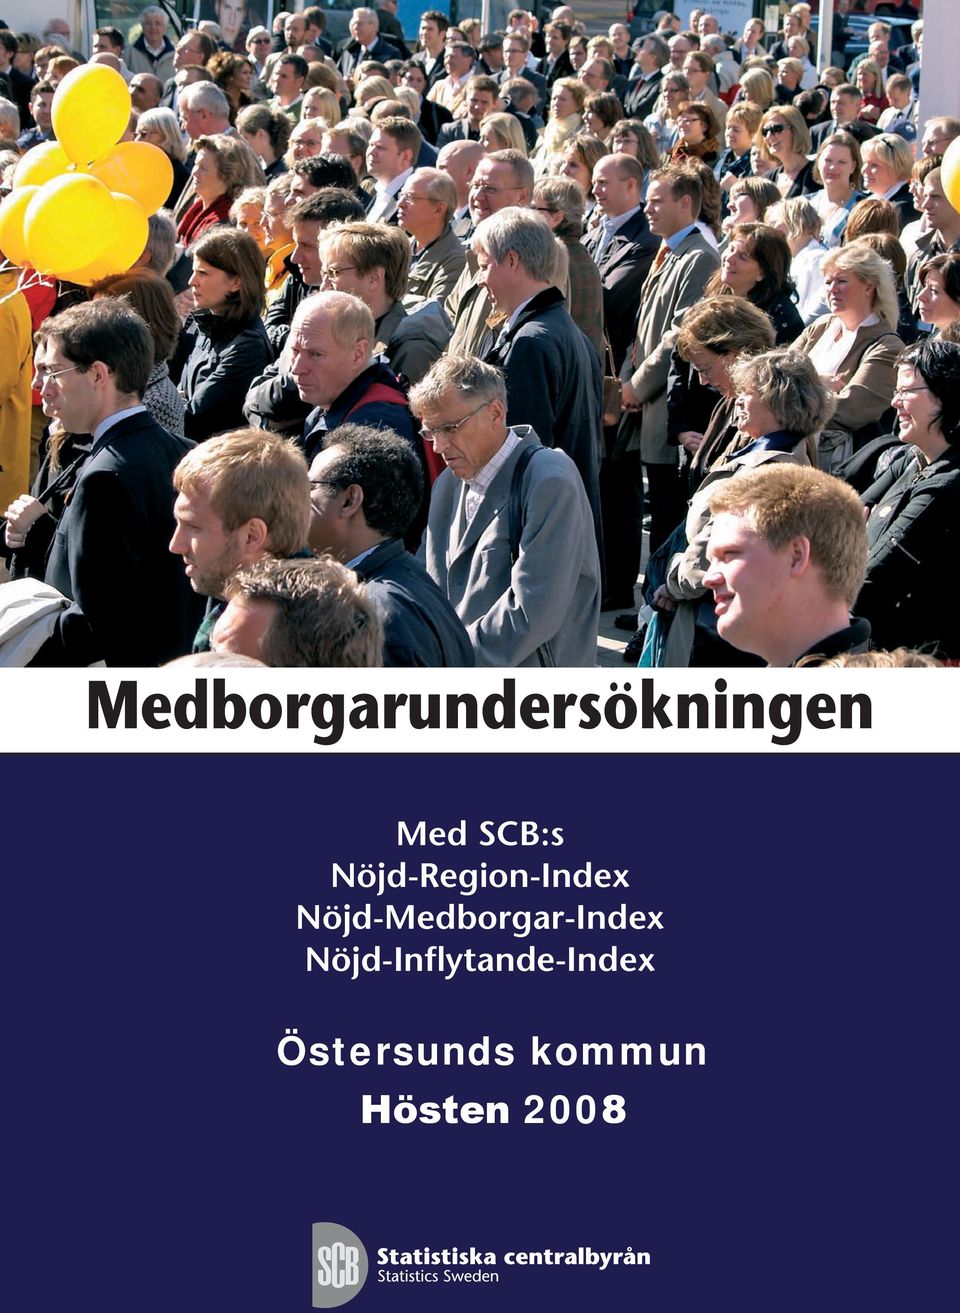 Nöjd-Medborgar-Index